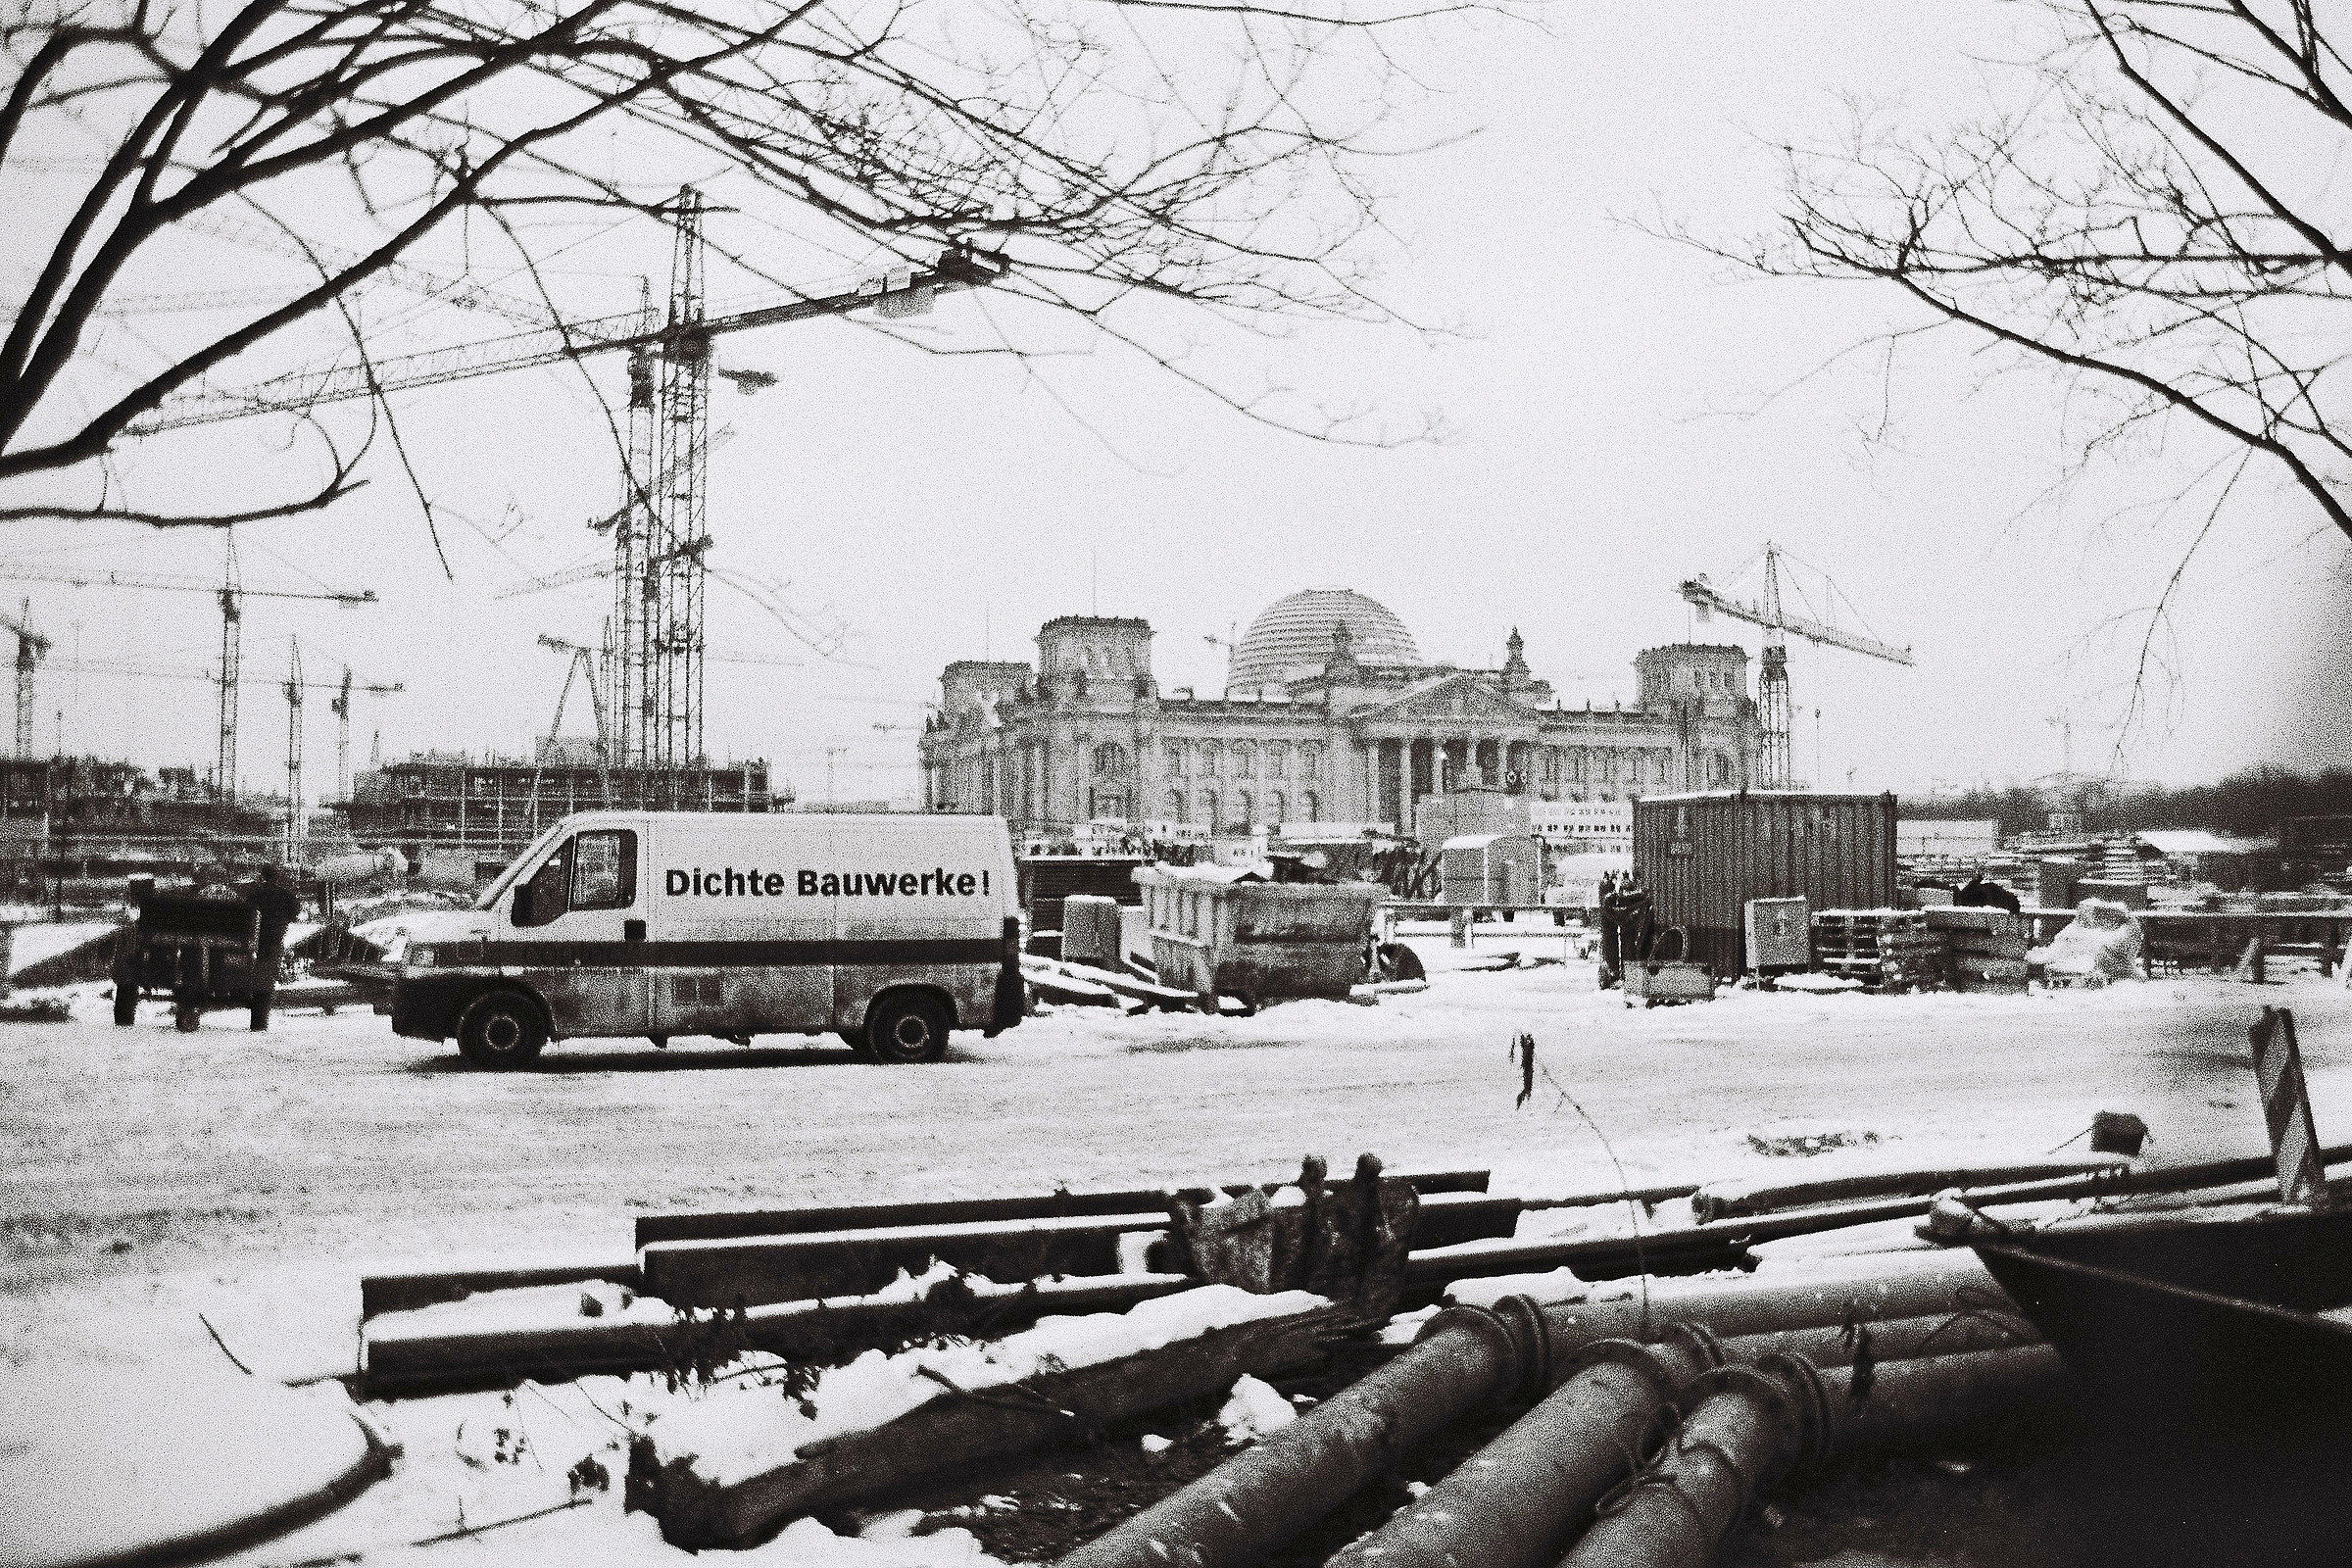 Reichstag in ricostruzine...